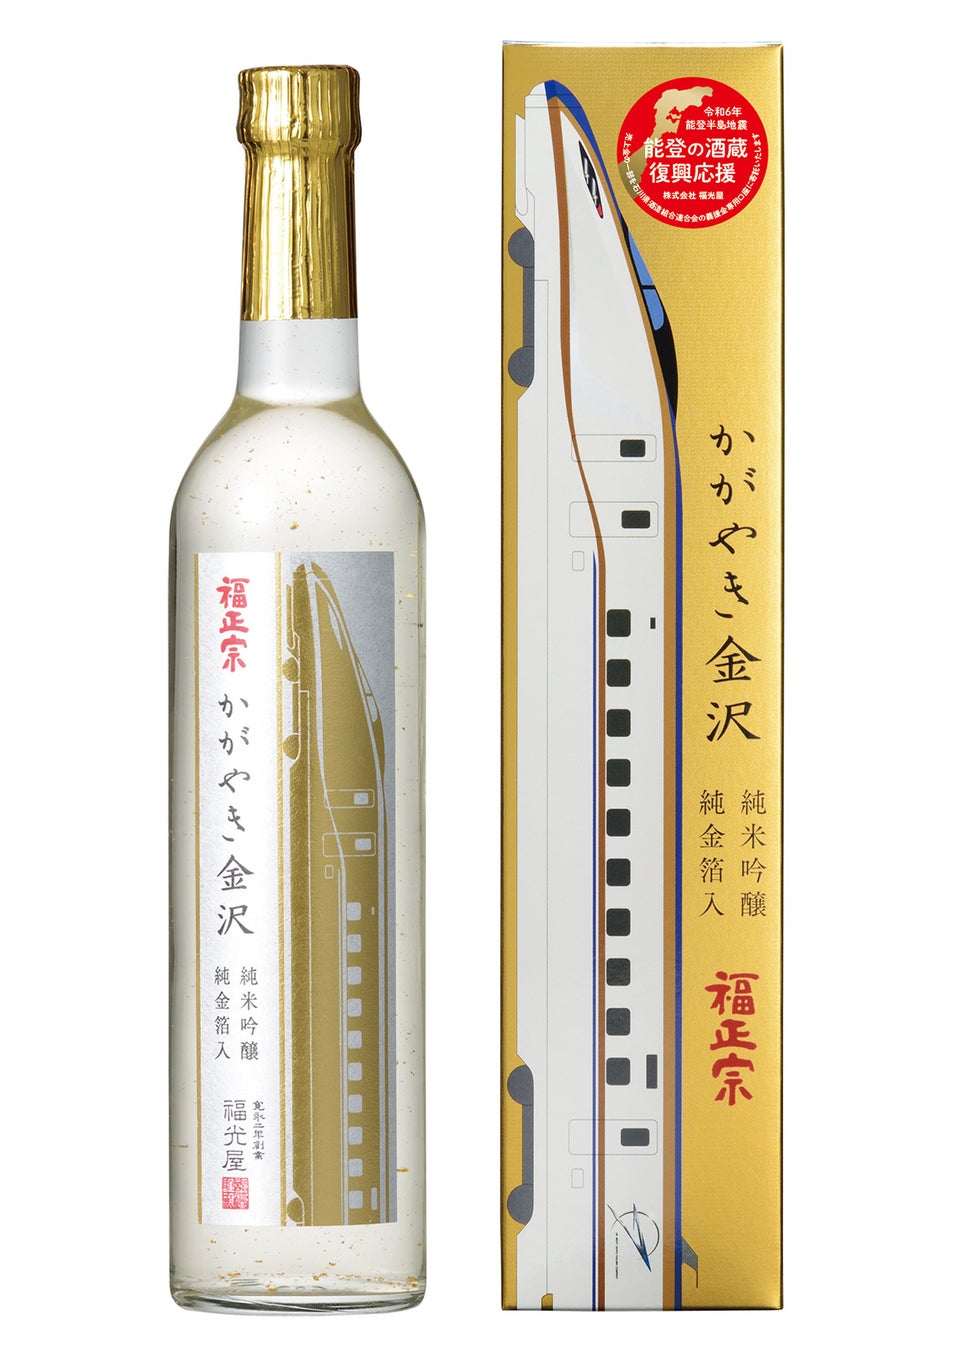 北陸新幹線で彩られた記念ボトルが能登半島地震の復興応援酒として再登場